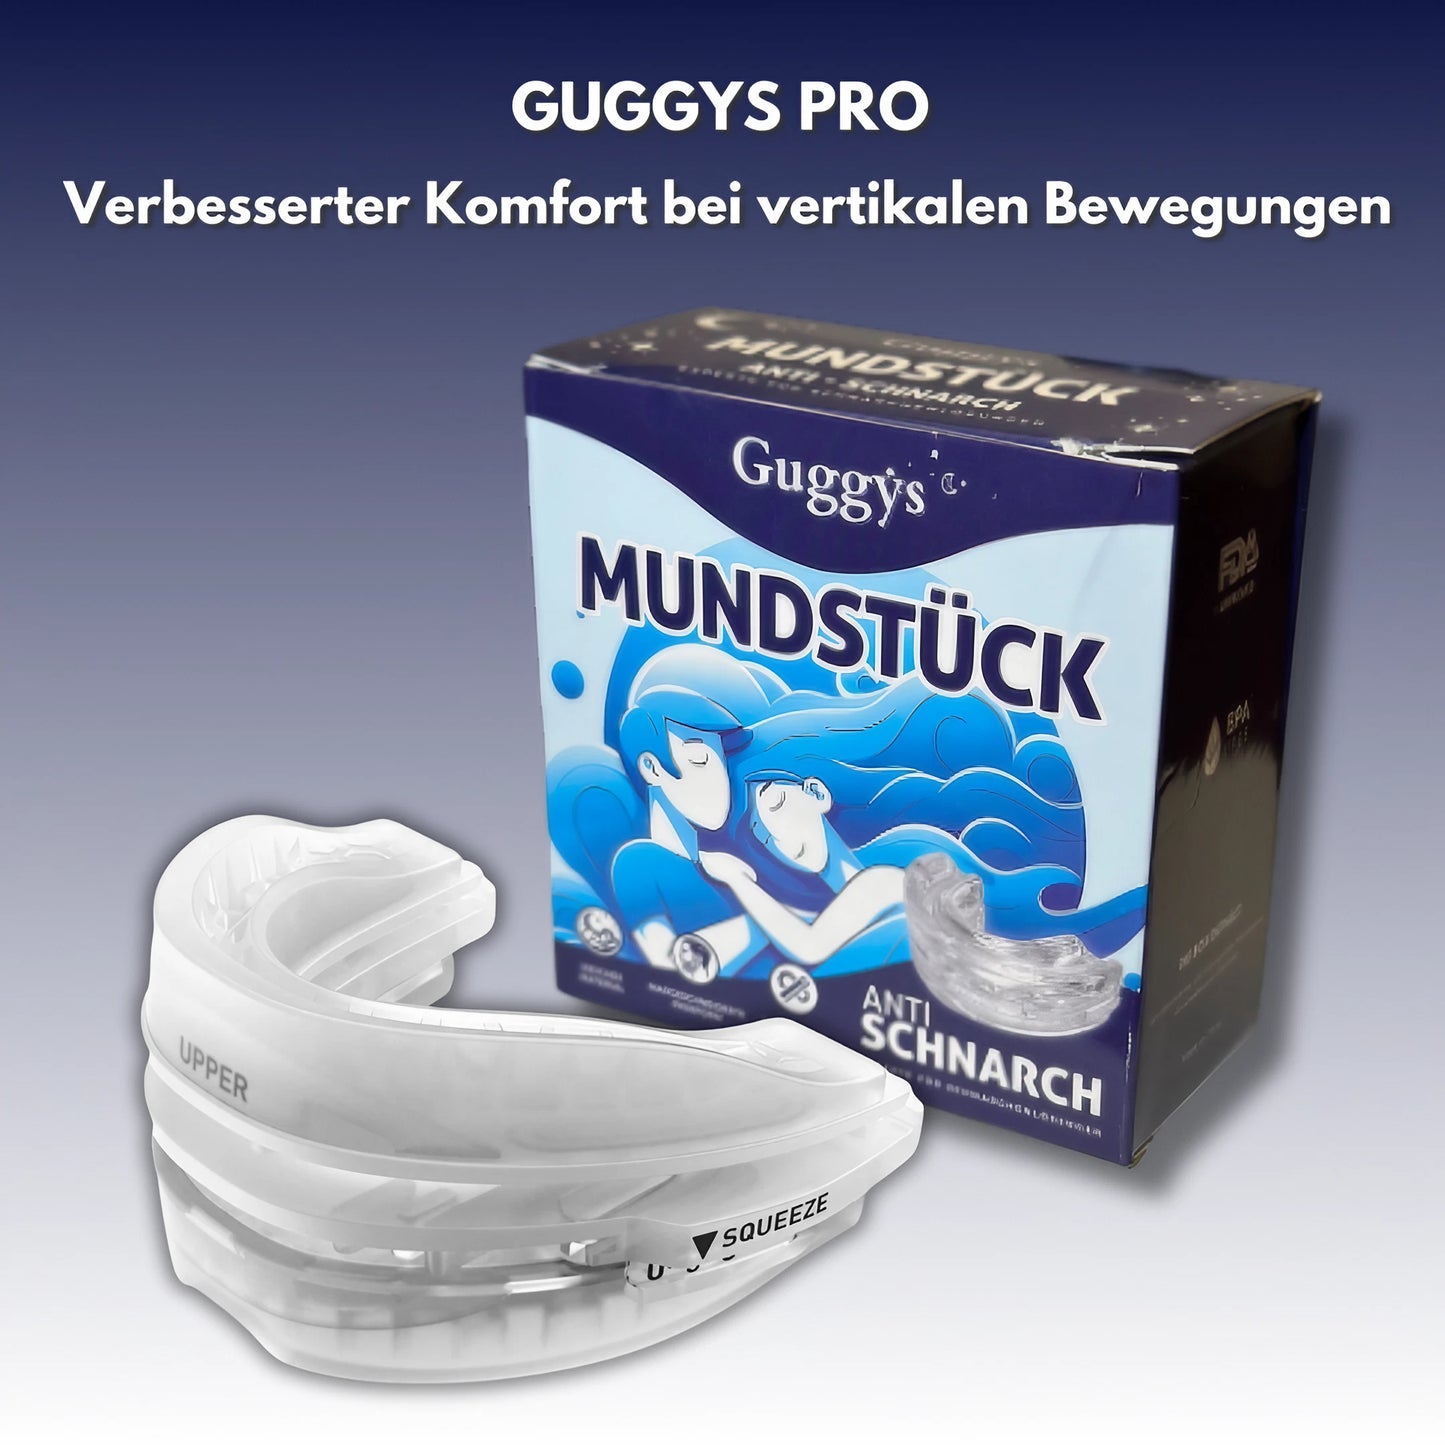 Guggys PRO - Anti-Schnarch-Gerät